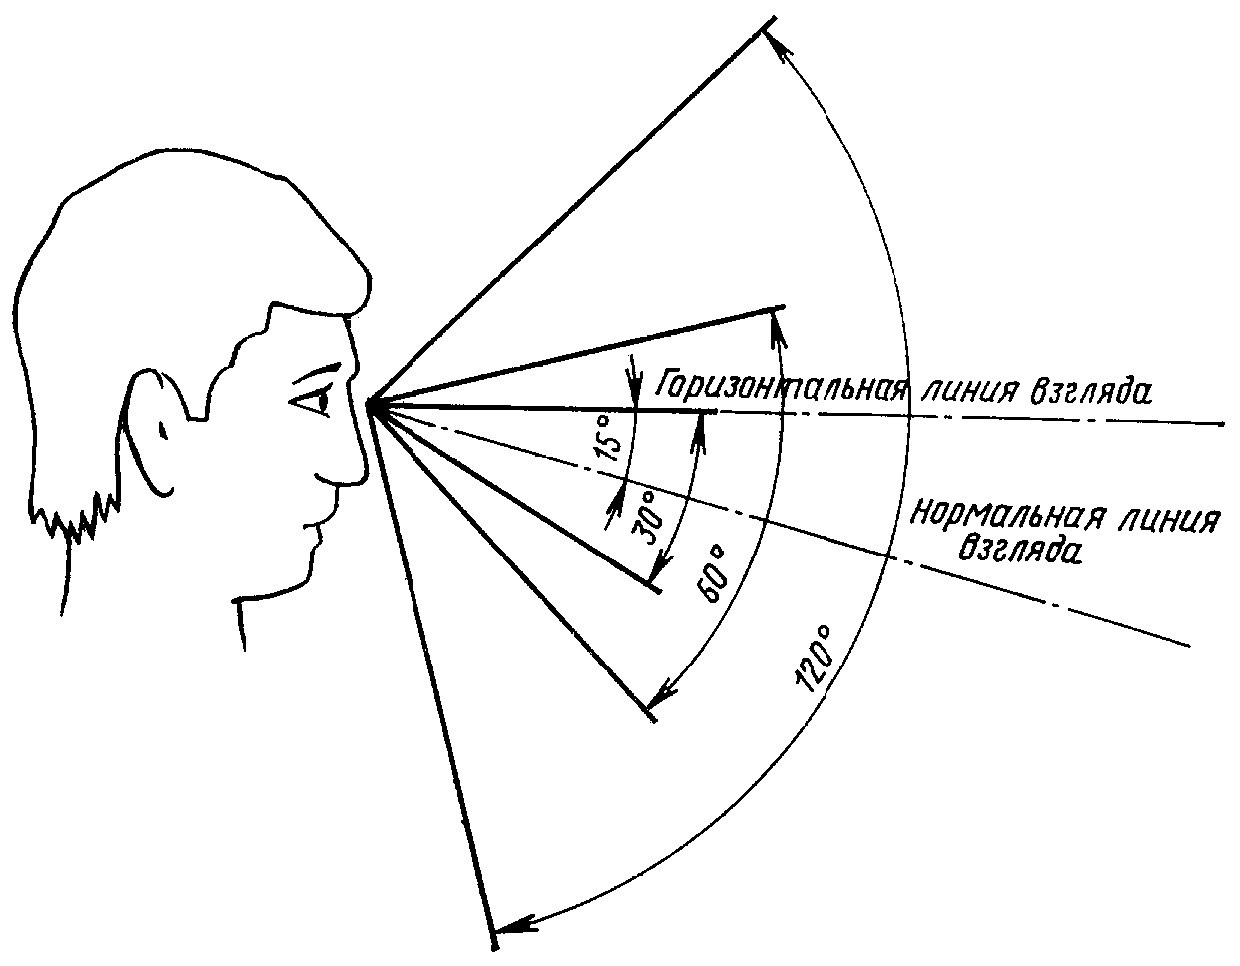 Центральное поле зрения. Угол периферийного зрения человека. Угол обзора зрения человека. Угол поля зрения человека. Угол обзора человеческого глаза по вертикали.